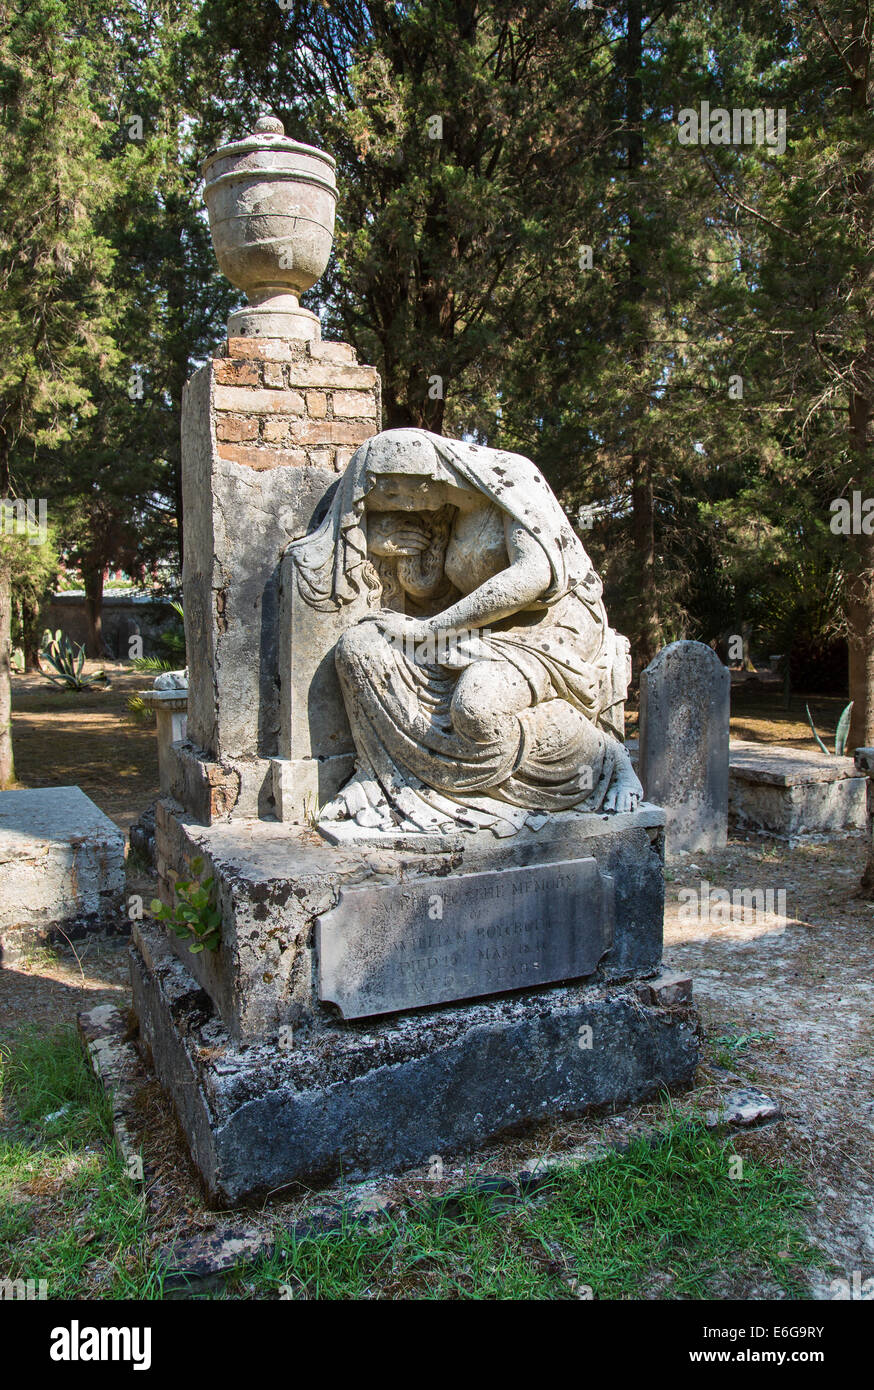 Visite turistiche nella città di Corfù: luogo interessante - antico e vecchio cimitero britannico. Qui la scultura di Maria Foto Stock